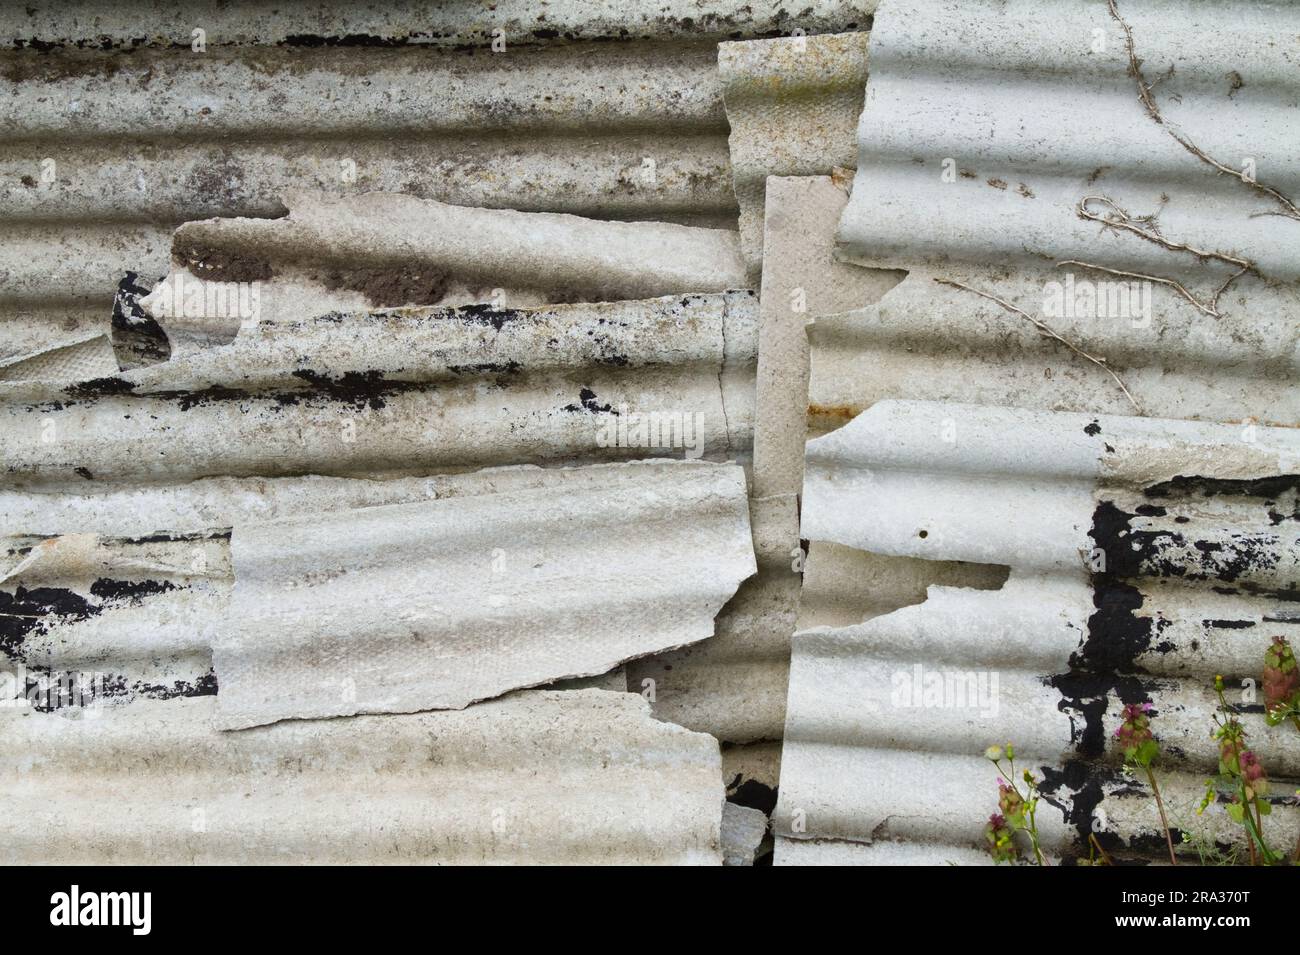 Stapel Von Alten Zerbrochenen Asbestzementplatten, Die Sich Aneinander Stapeln. Toxisch, krebsverursachend Lungenprobleme und Asbestose, England, Großbritannien Stockfoto